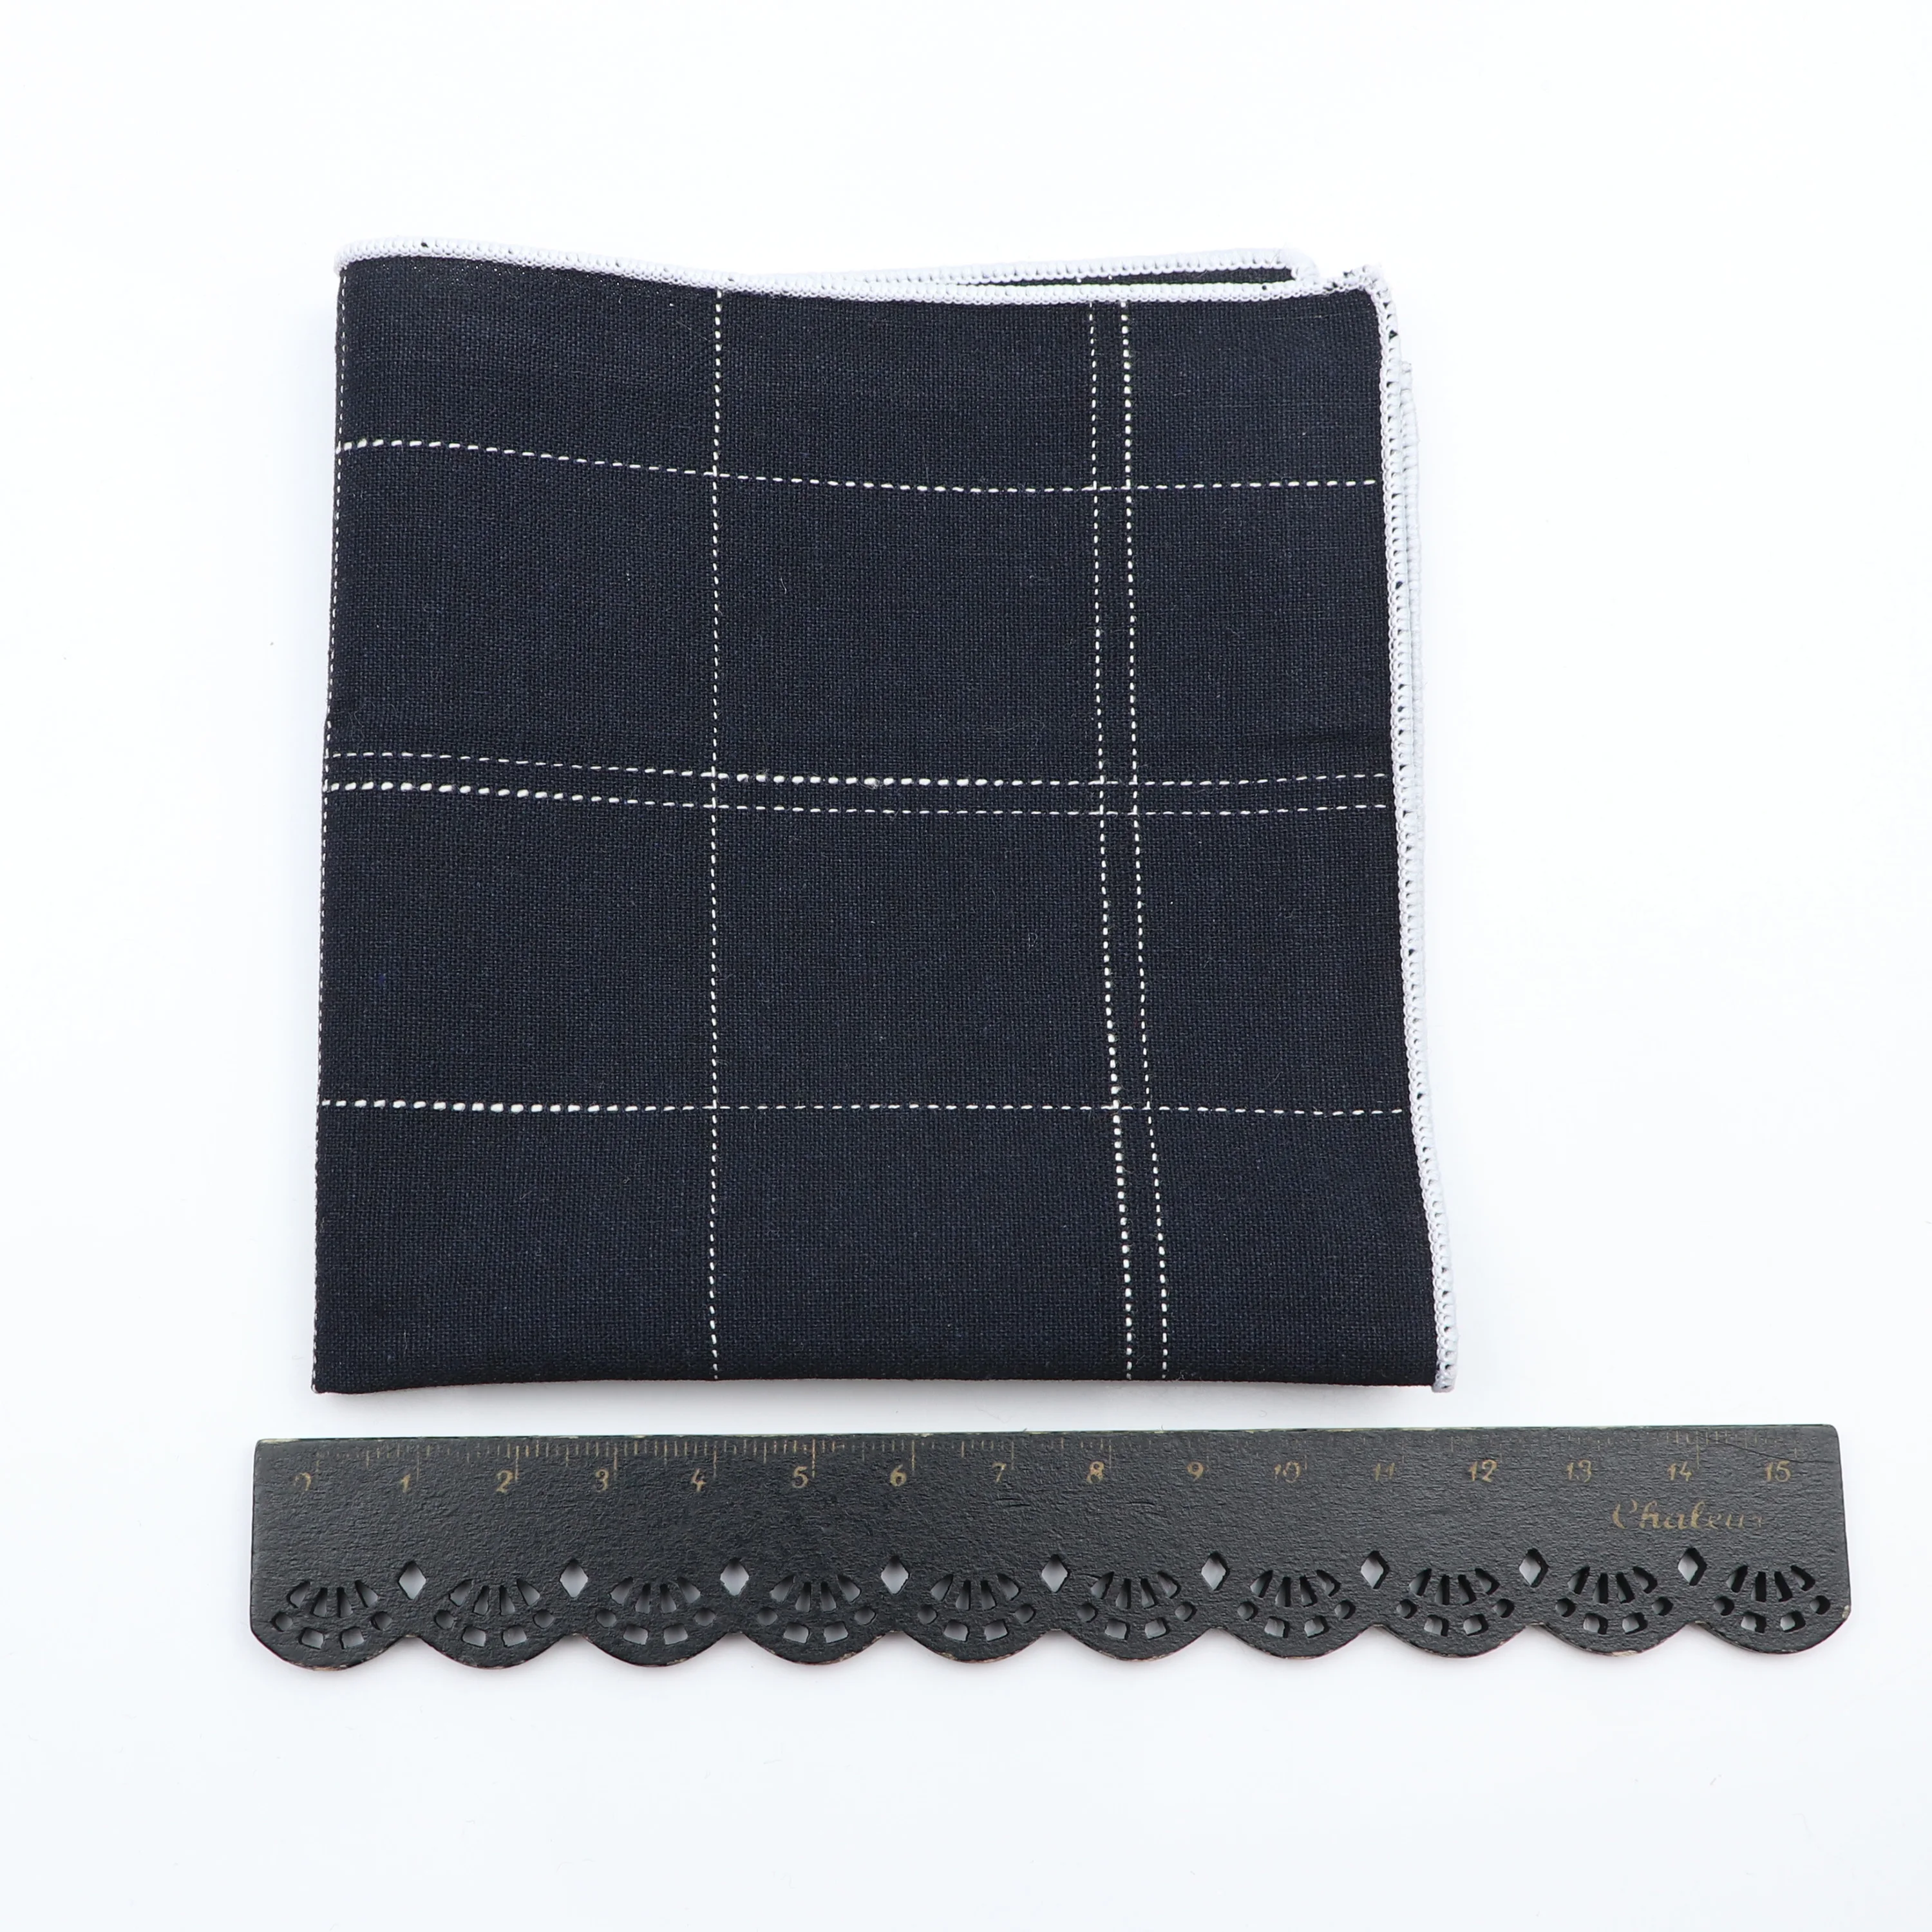 Schwarz Grau Blau Herren Anzug Tasche Platz 100% Baumwolle Handgemachte 24cm Breite Striped Plaid Brust Handtuch Hanky Formale Taschentuch geschenk